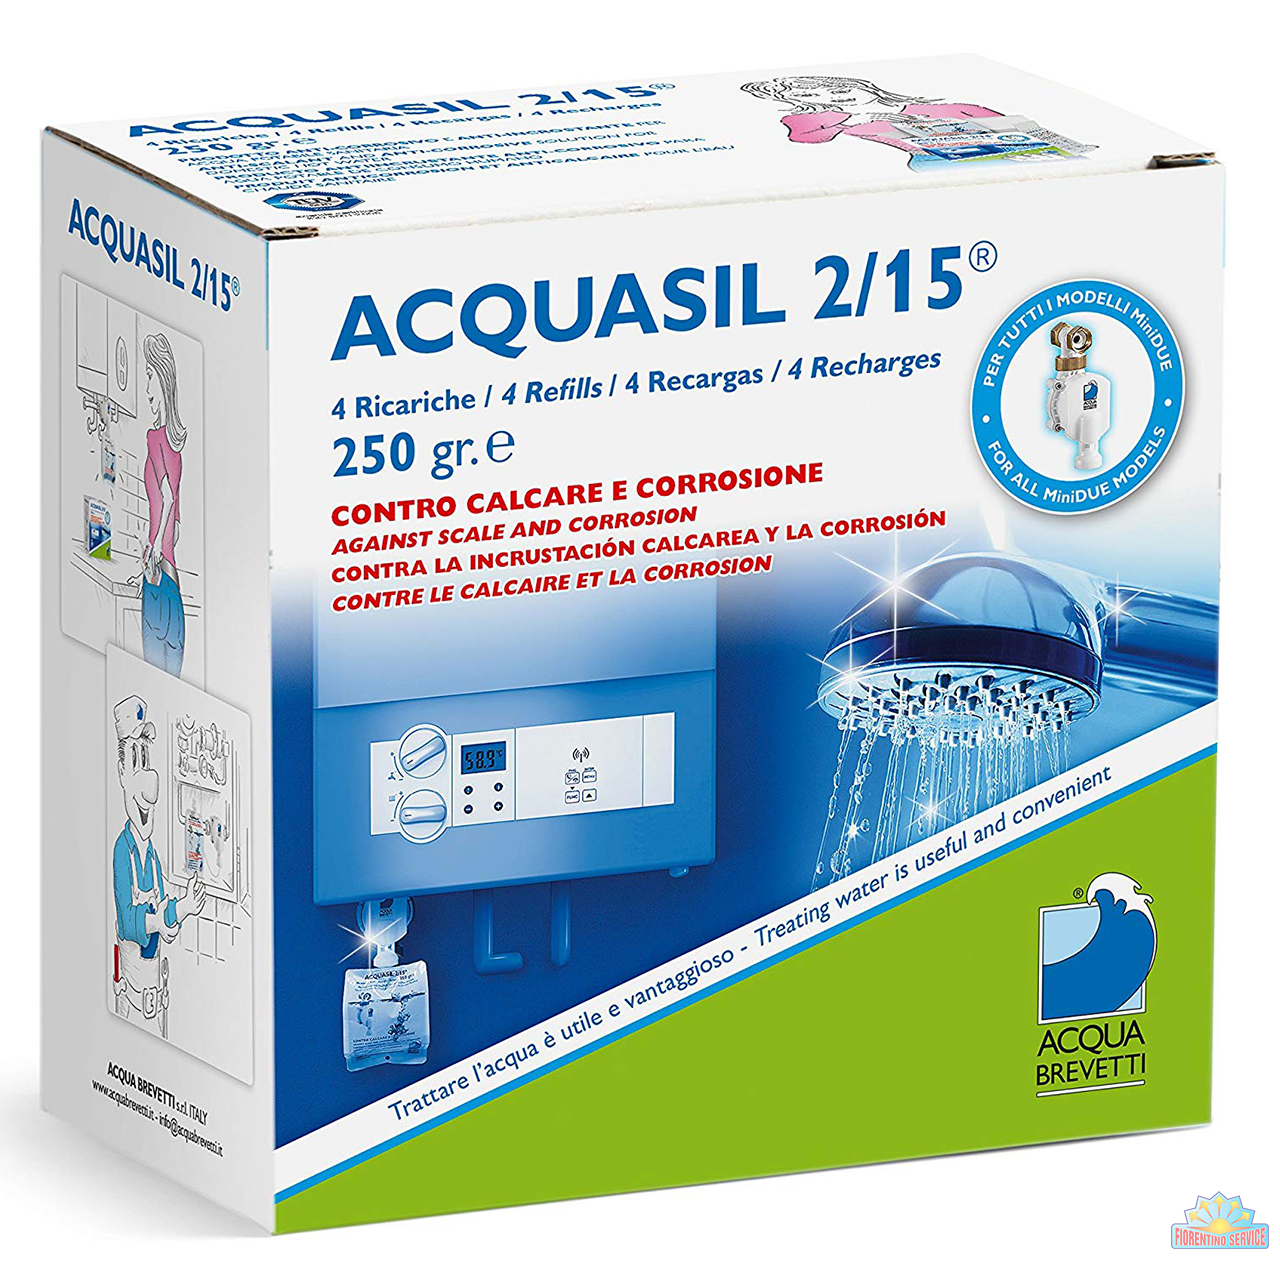 Acqua Brevetti Confezione 4 Ricariche ACQUASIL 2/15 GR.250